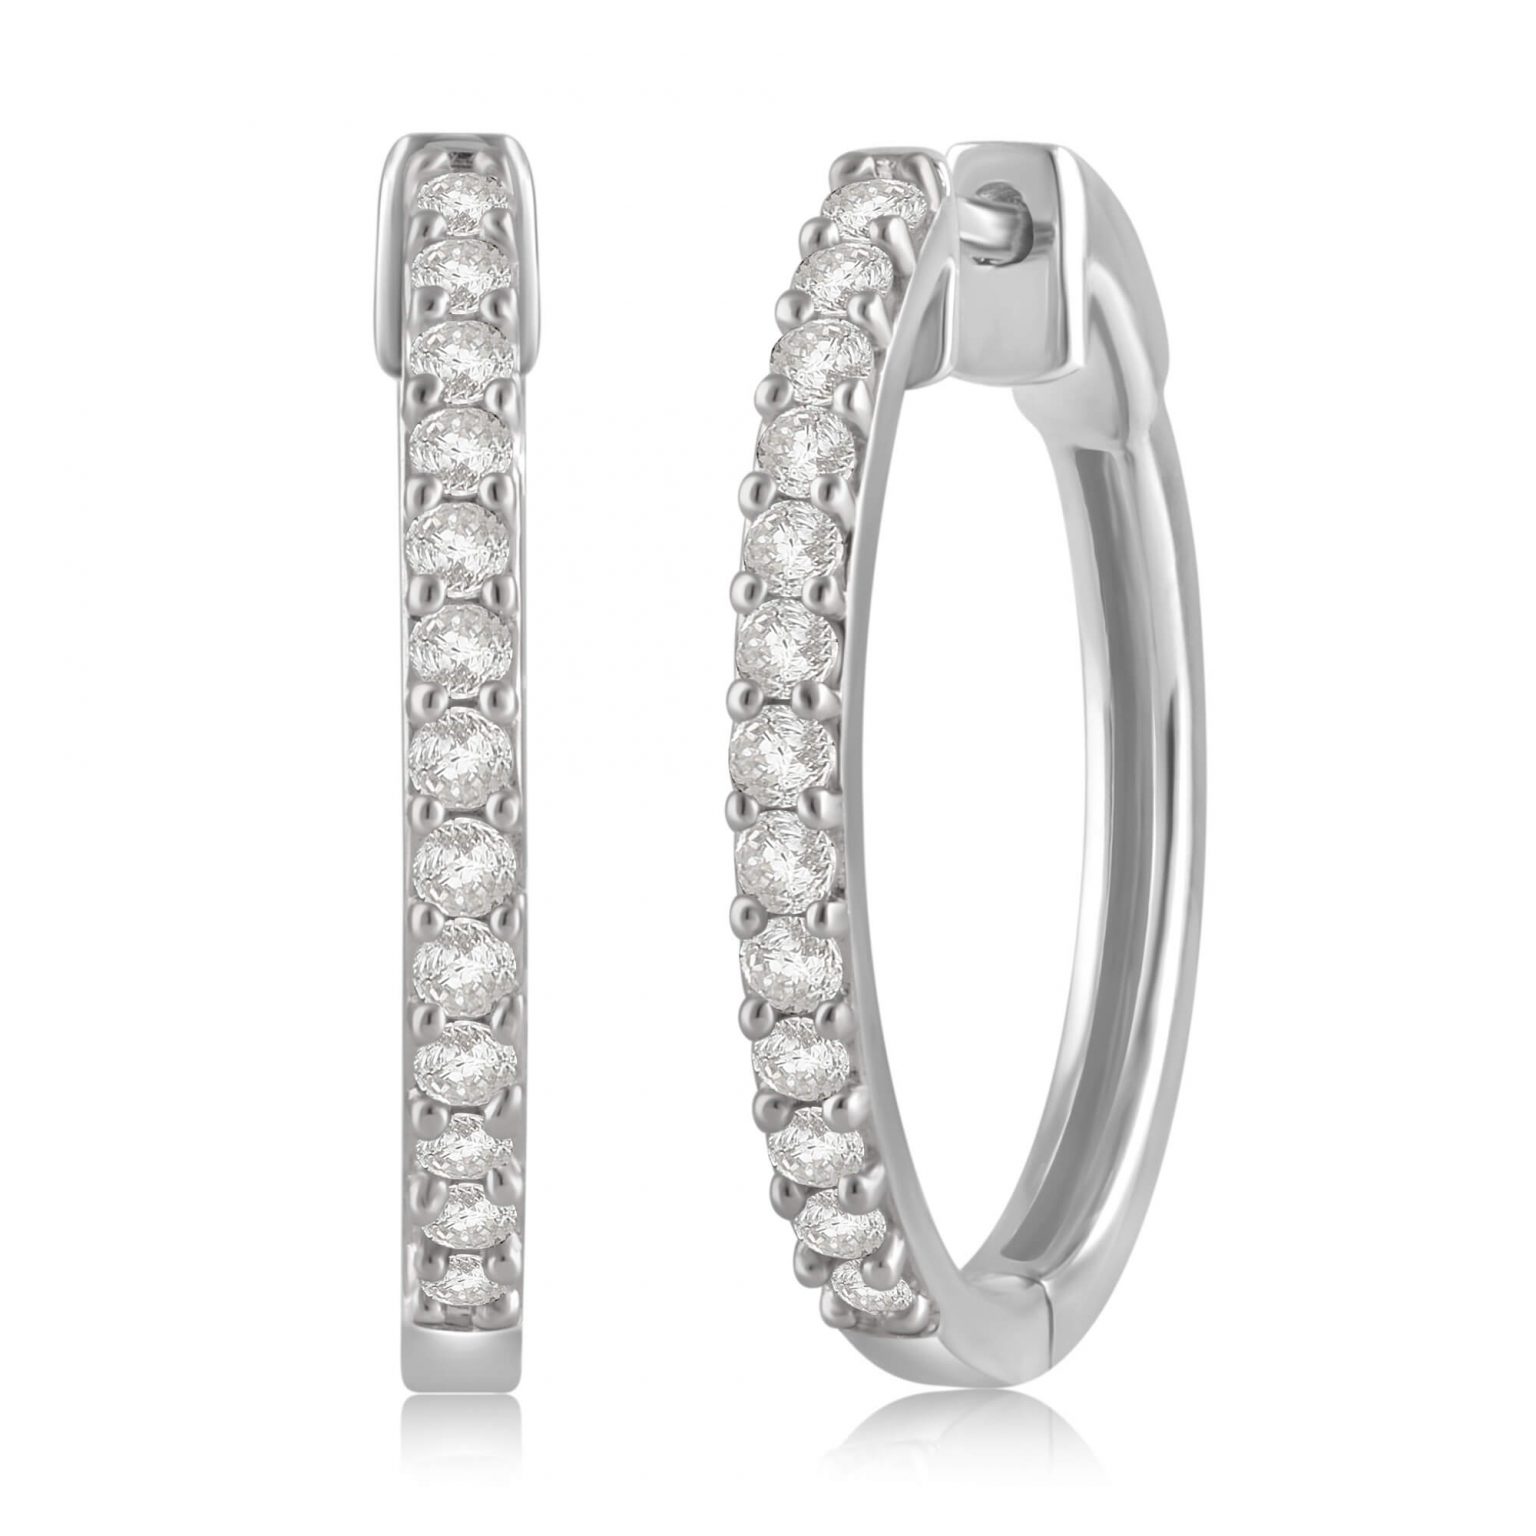 1/10 to 1/2 Carat Diamond Hoop Earrings in Sterling Silver